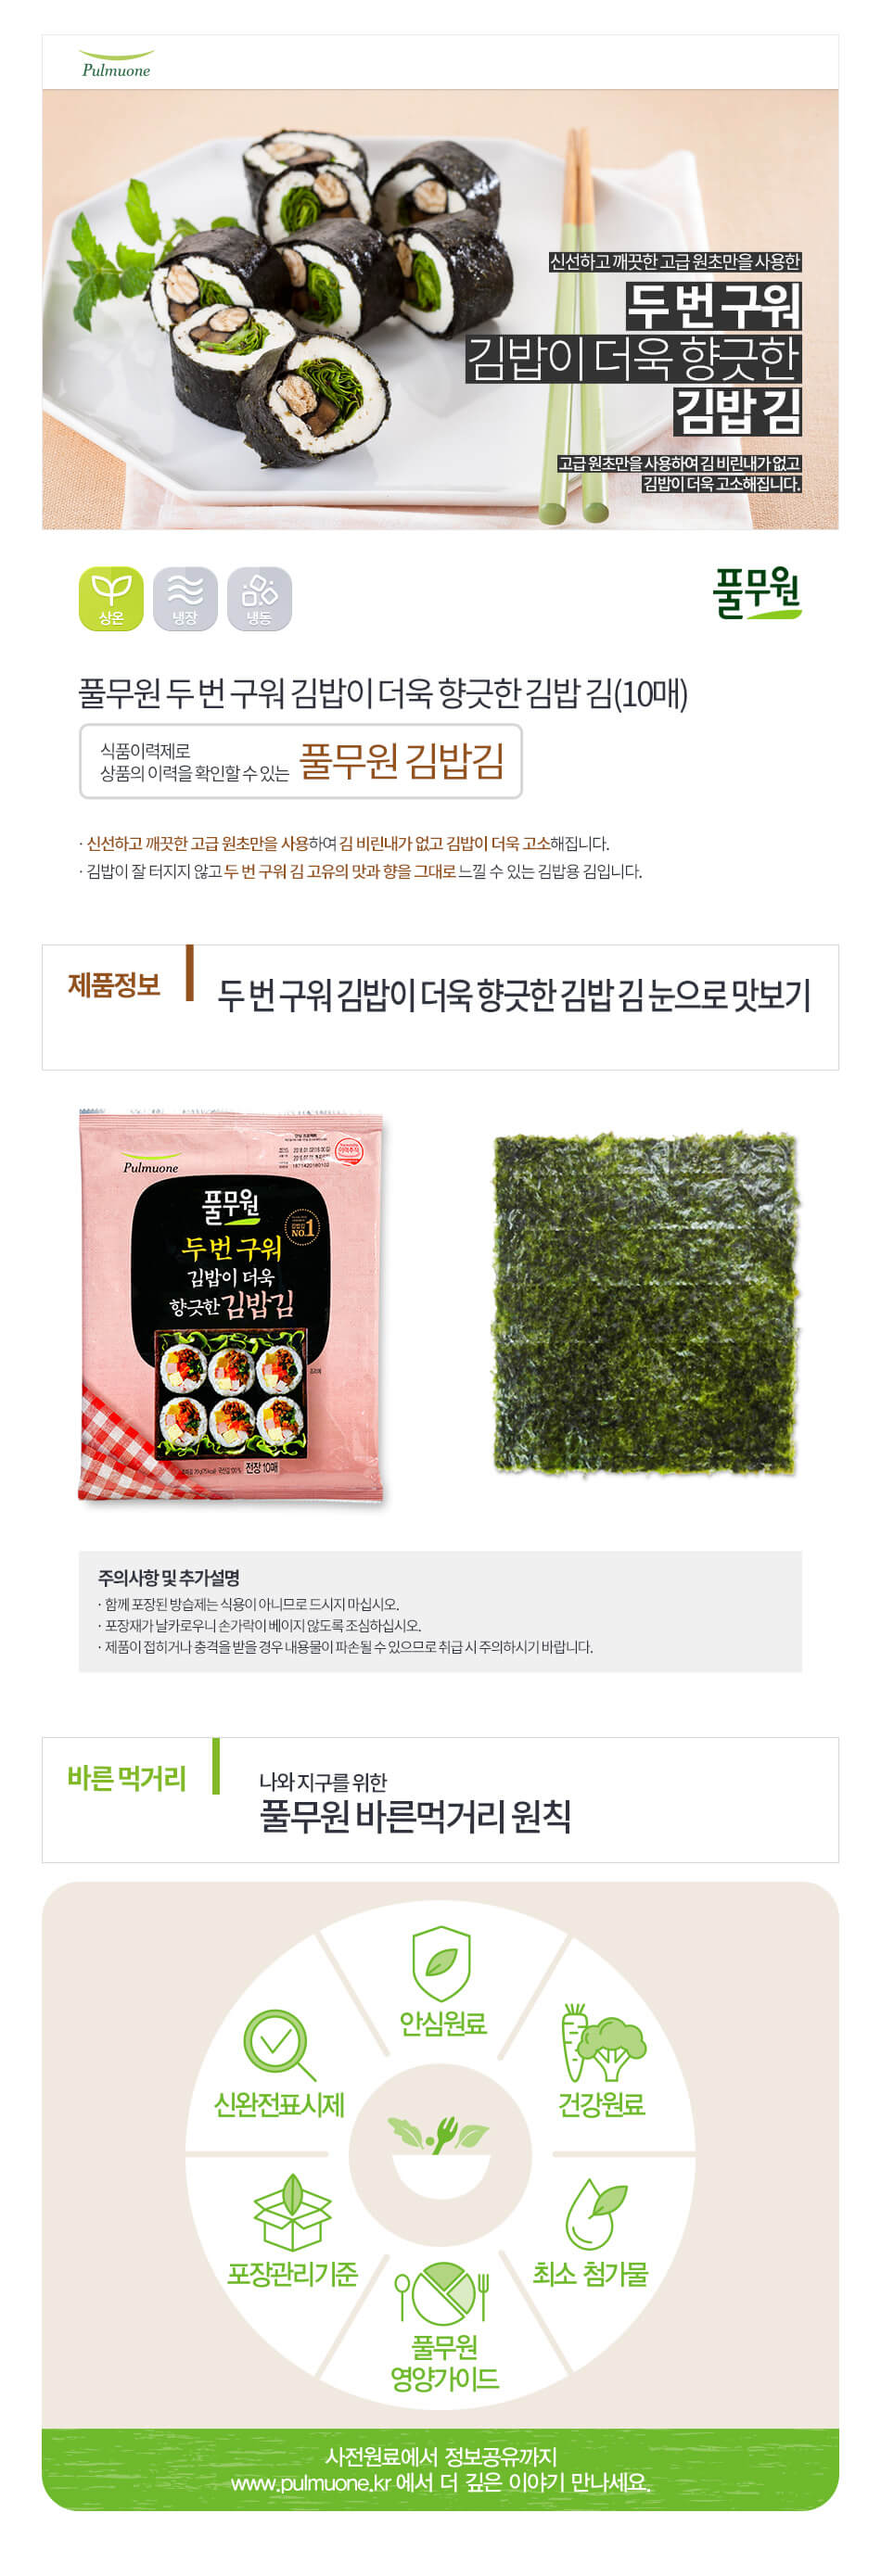 韓國食品-[Pulmuone] Roasted Laver [Kimbab] 20g(10p)